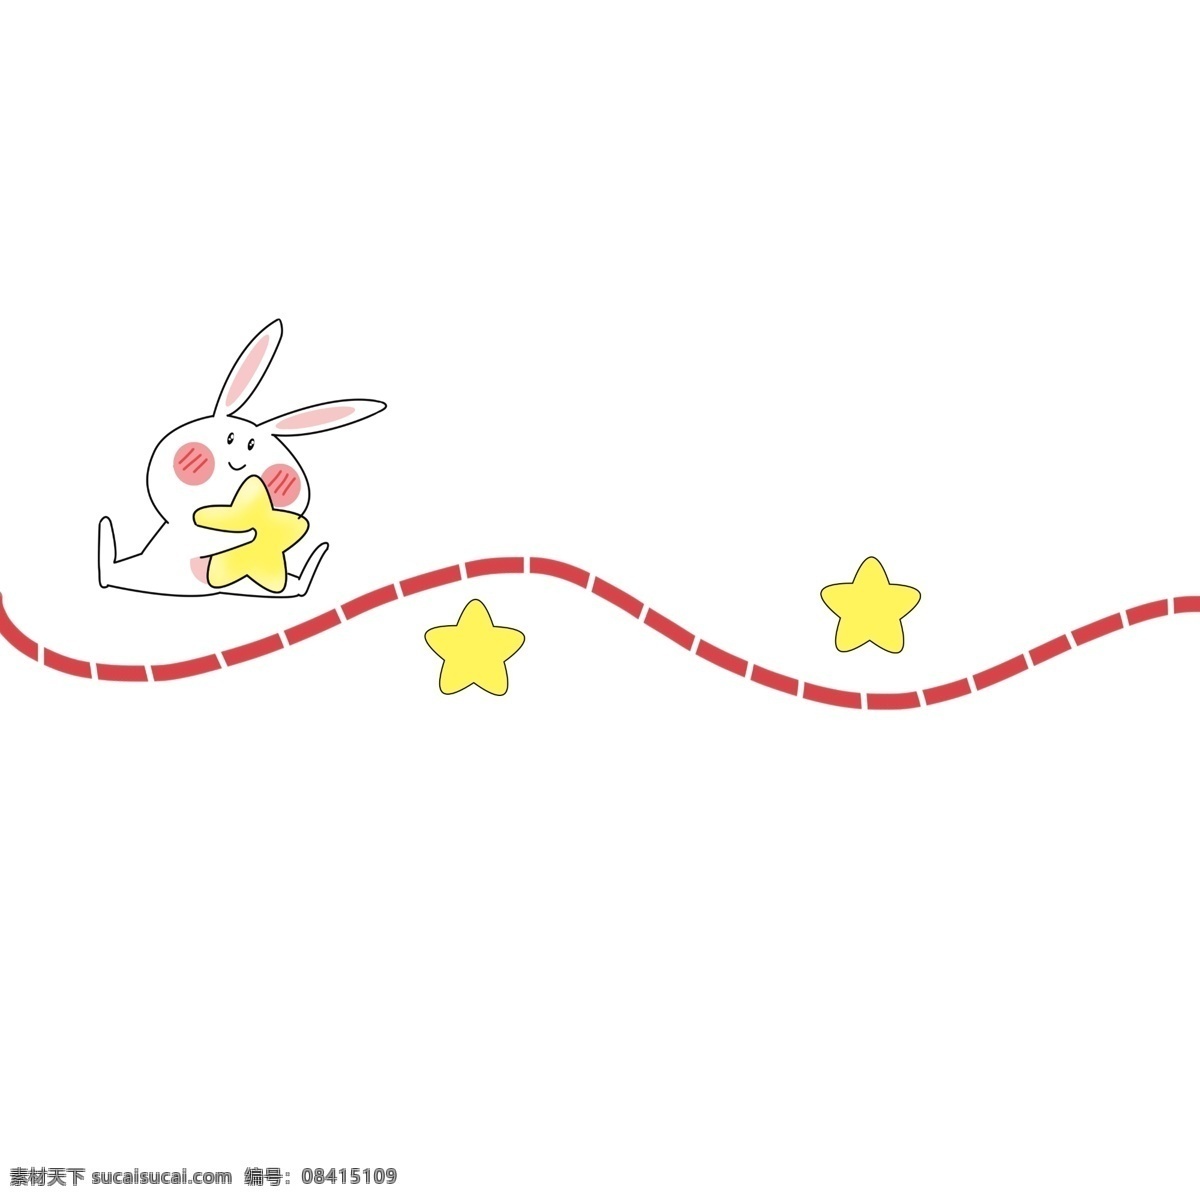 红色 分割线 插画 红色的分割线 卡通插画 分割线插画 简易分割线 直线分割线 可爱的兔子